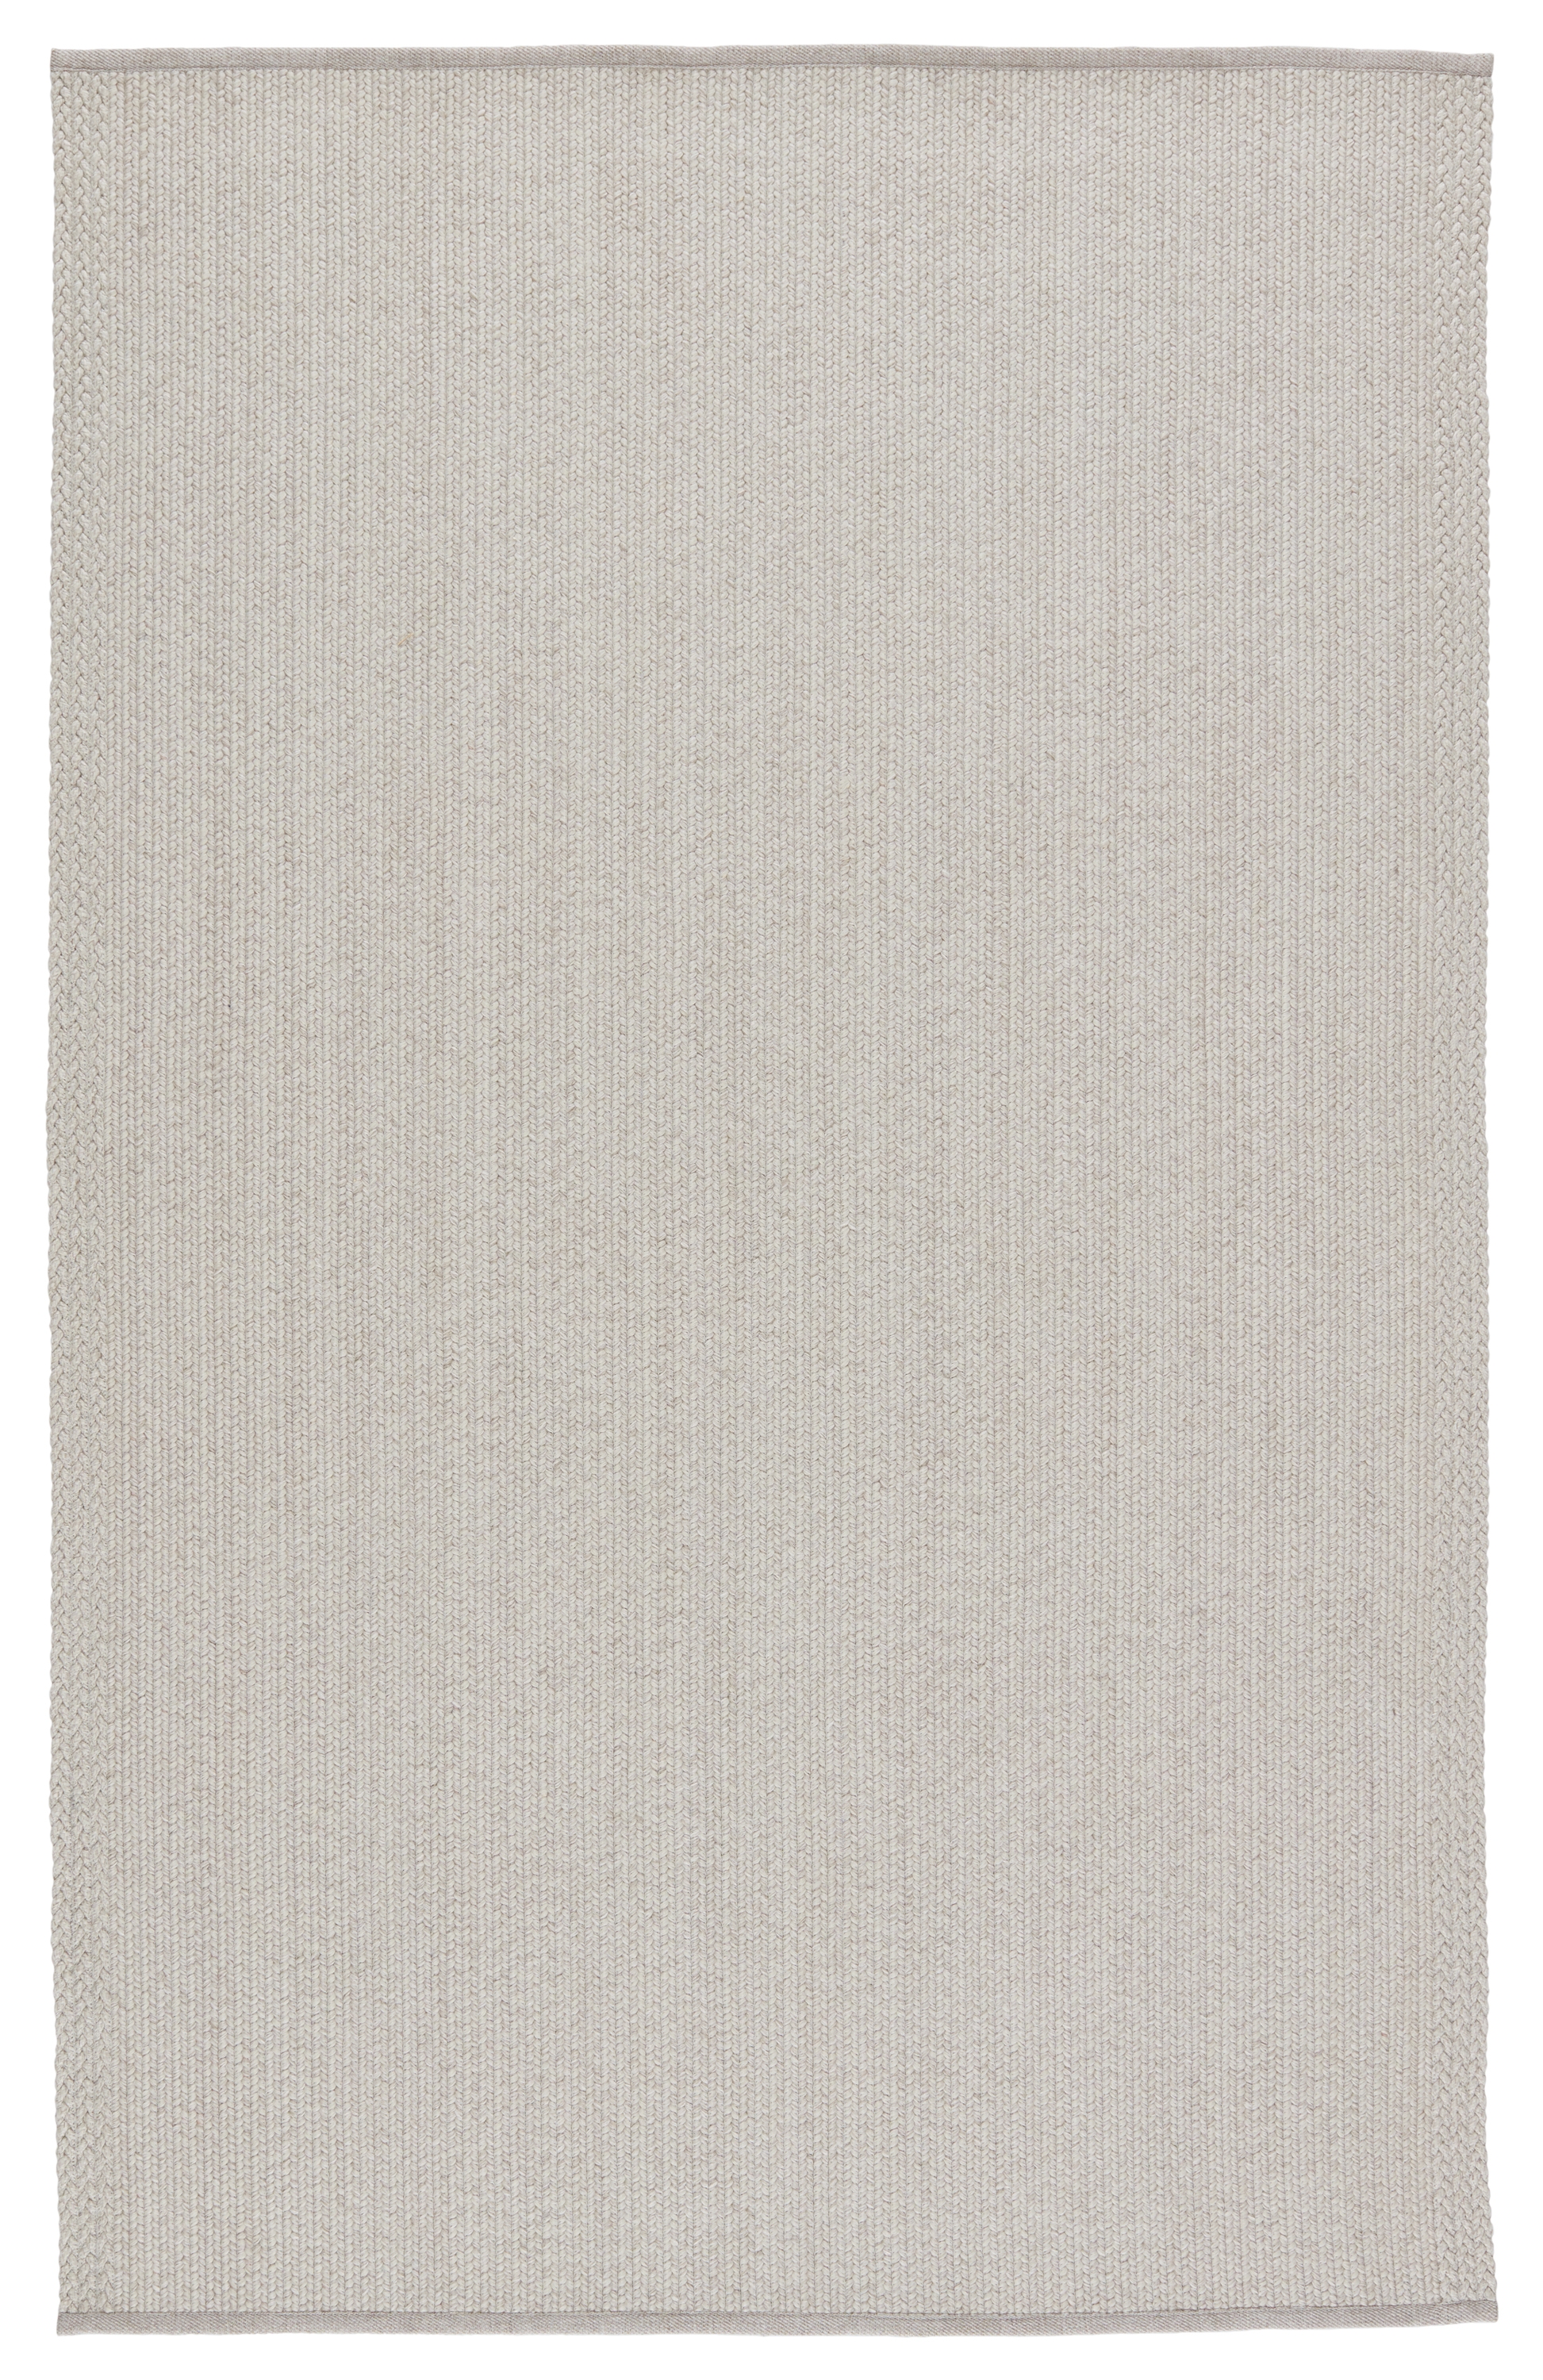 Sven Indoor/ Outdoor Solid Light Gray Area Rug (5'X8') - Image 0